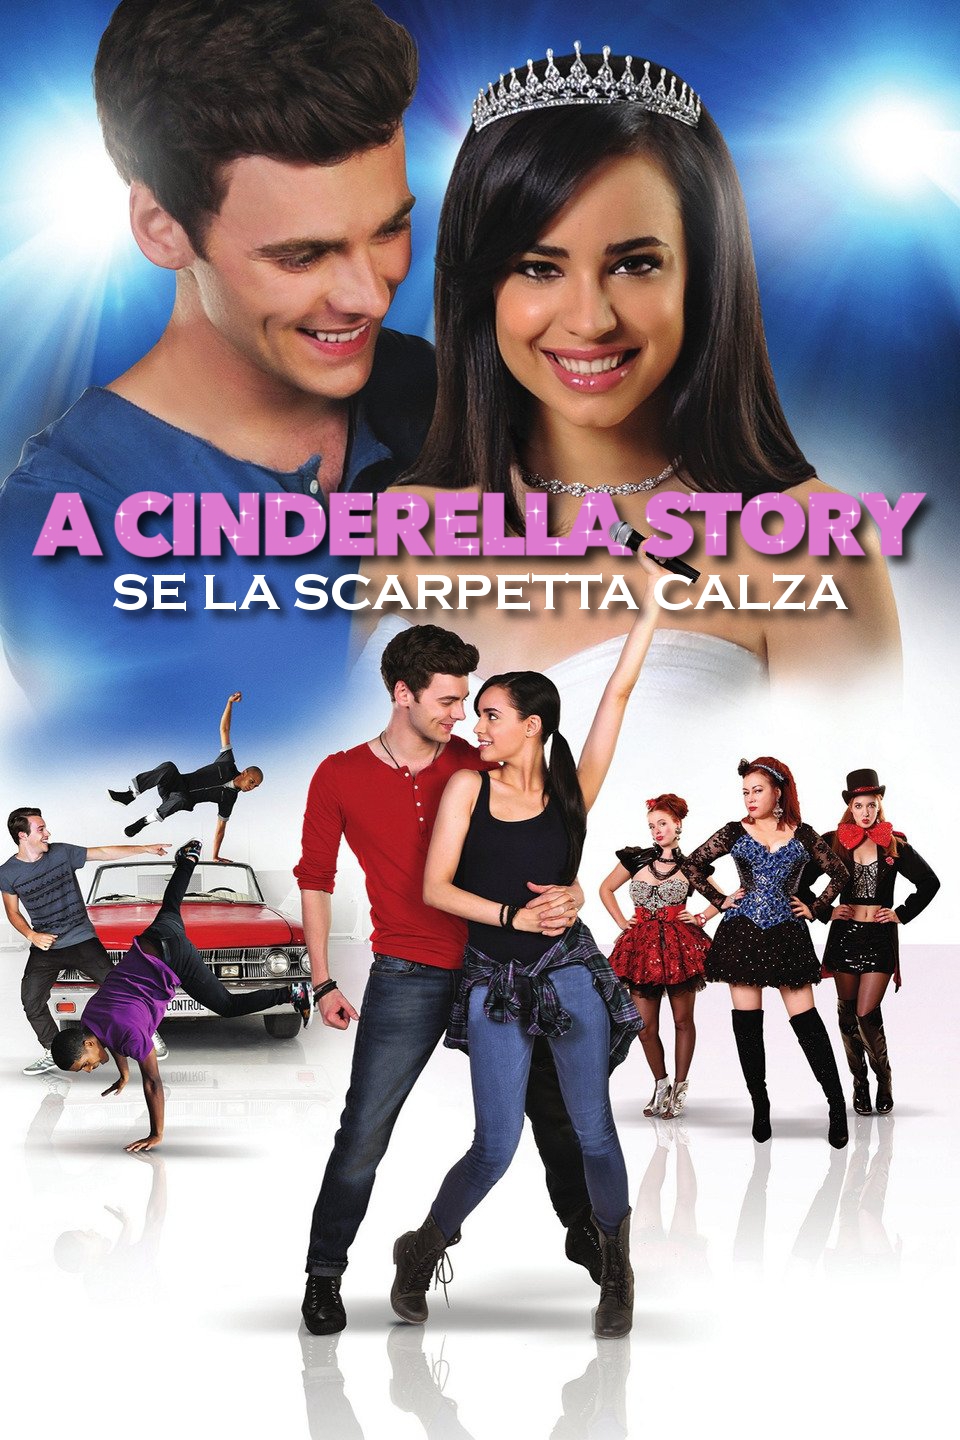 A Cinderella story: Se la scarpetta calza [HD] (2016)